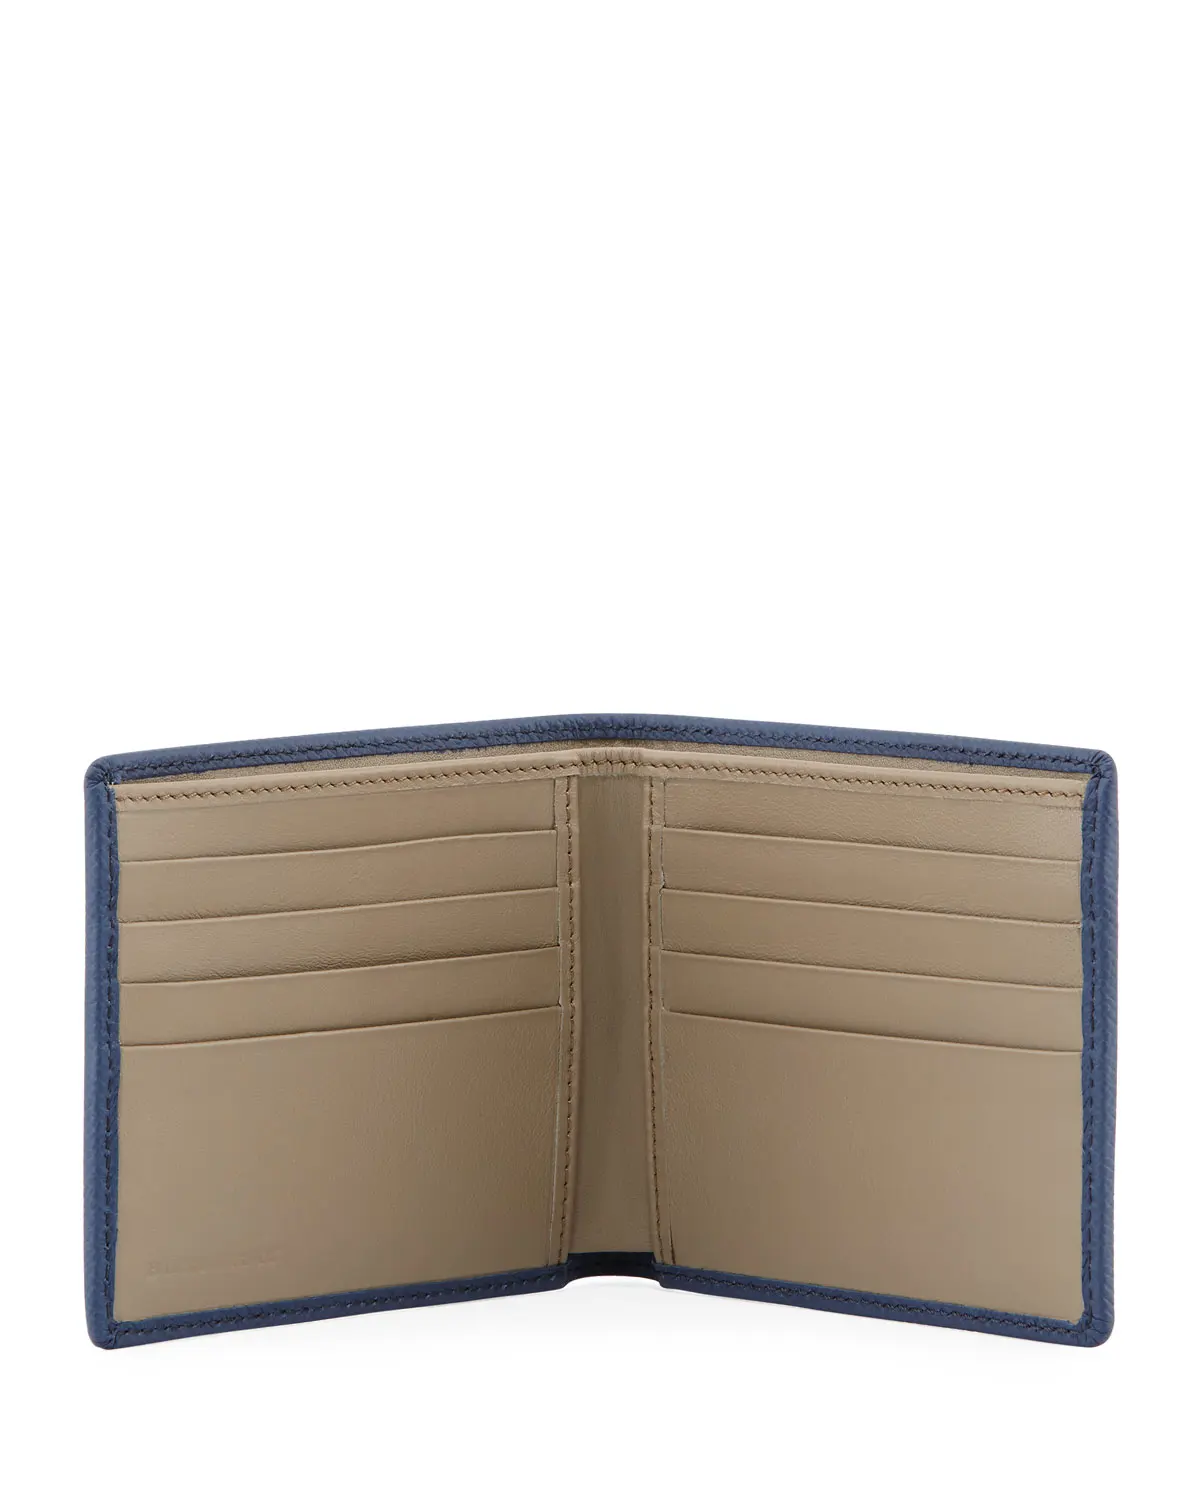 Bi-fold Wallet Standard Wallet Size - Buy Standard Wallet Size,Wallet ...